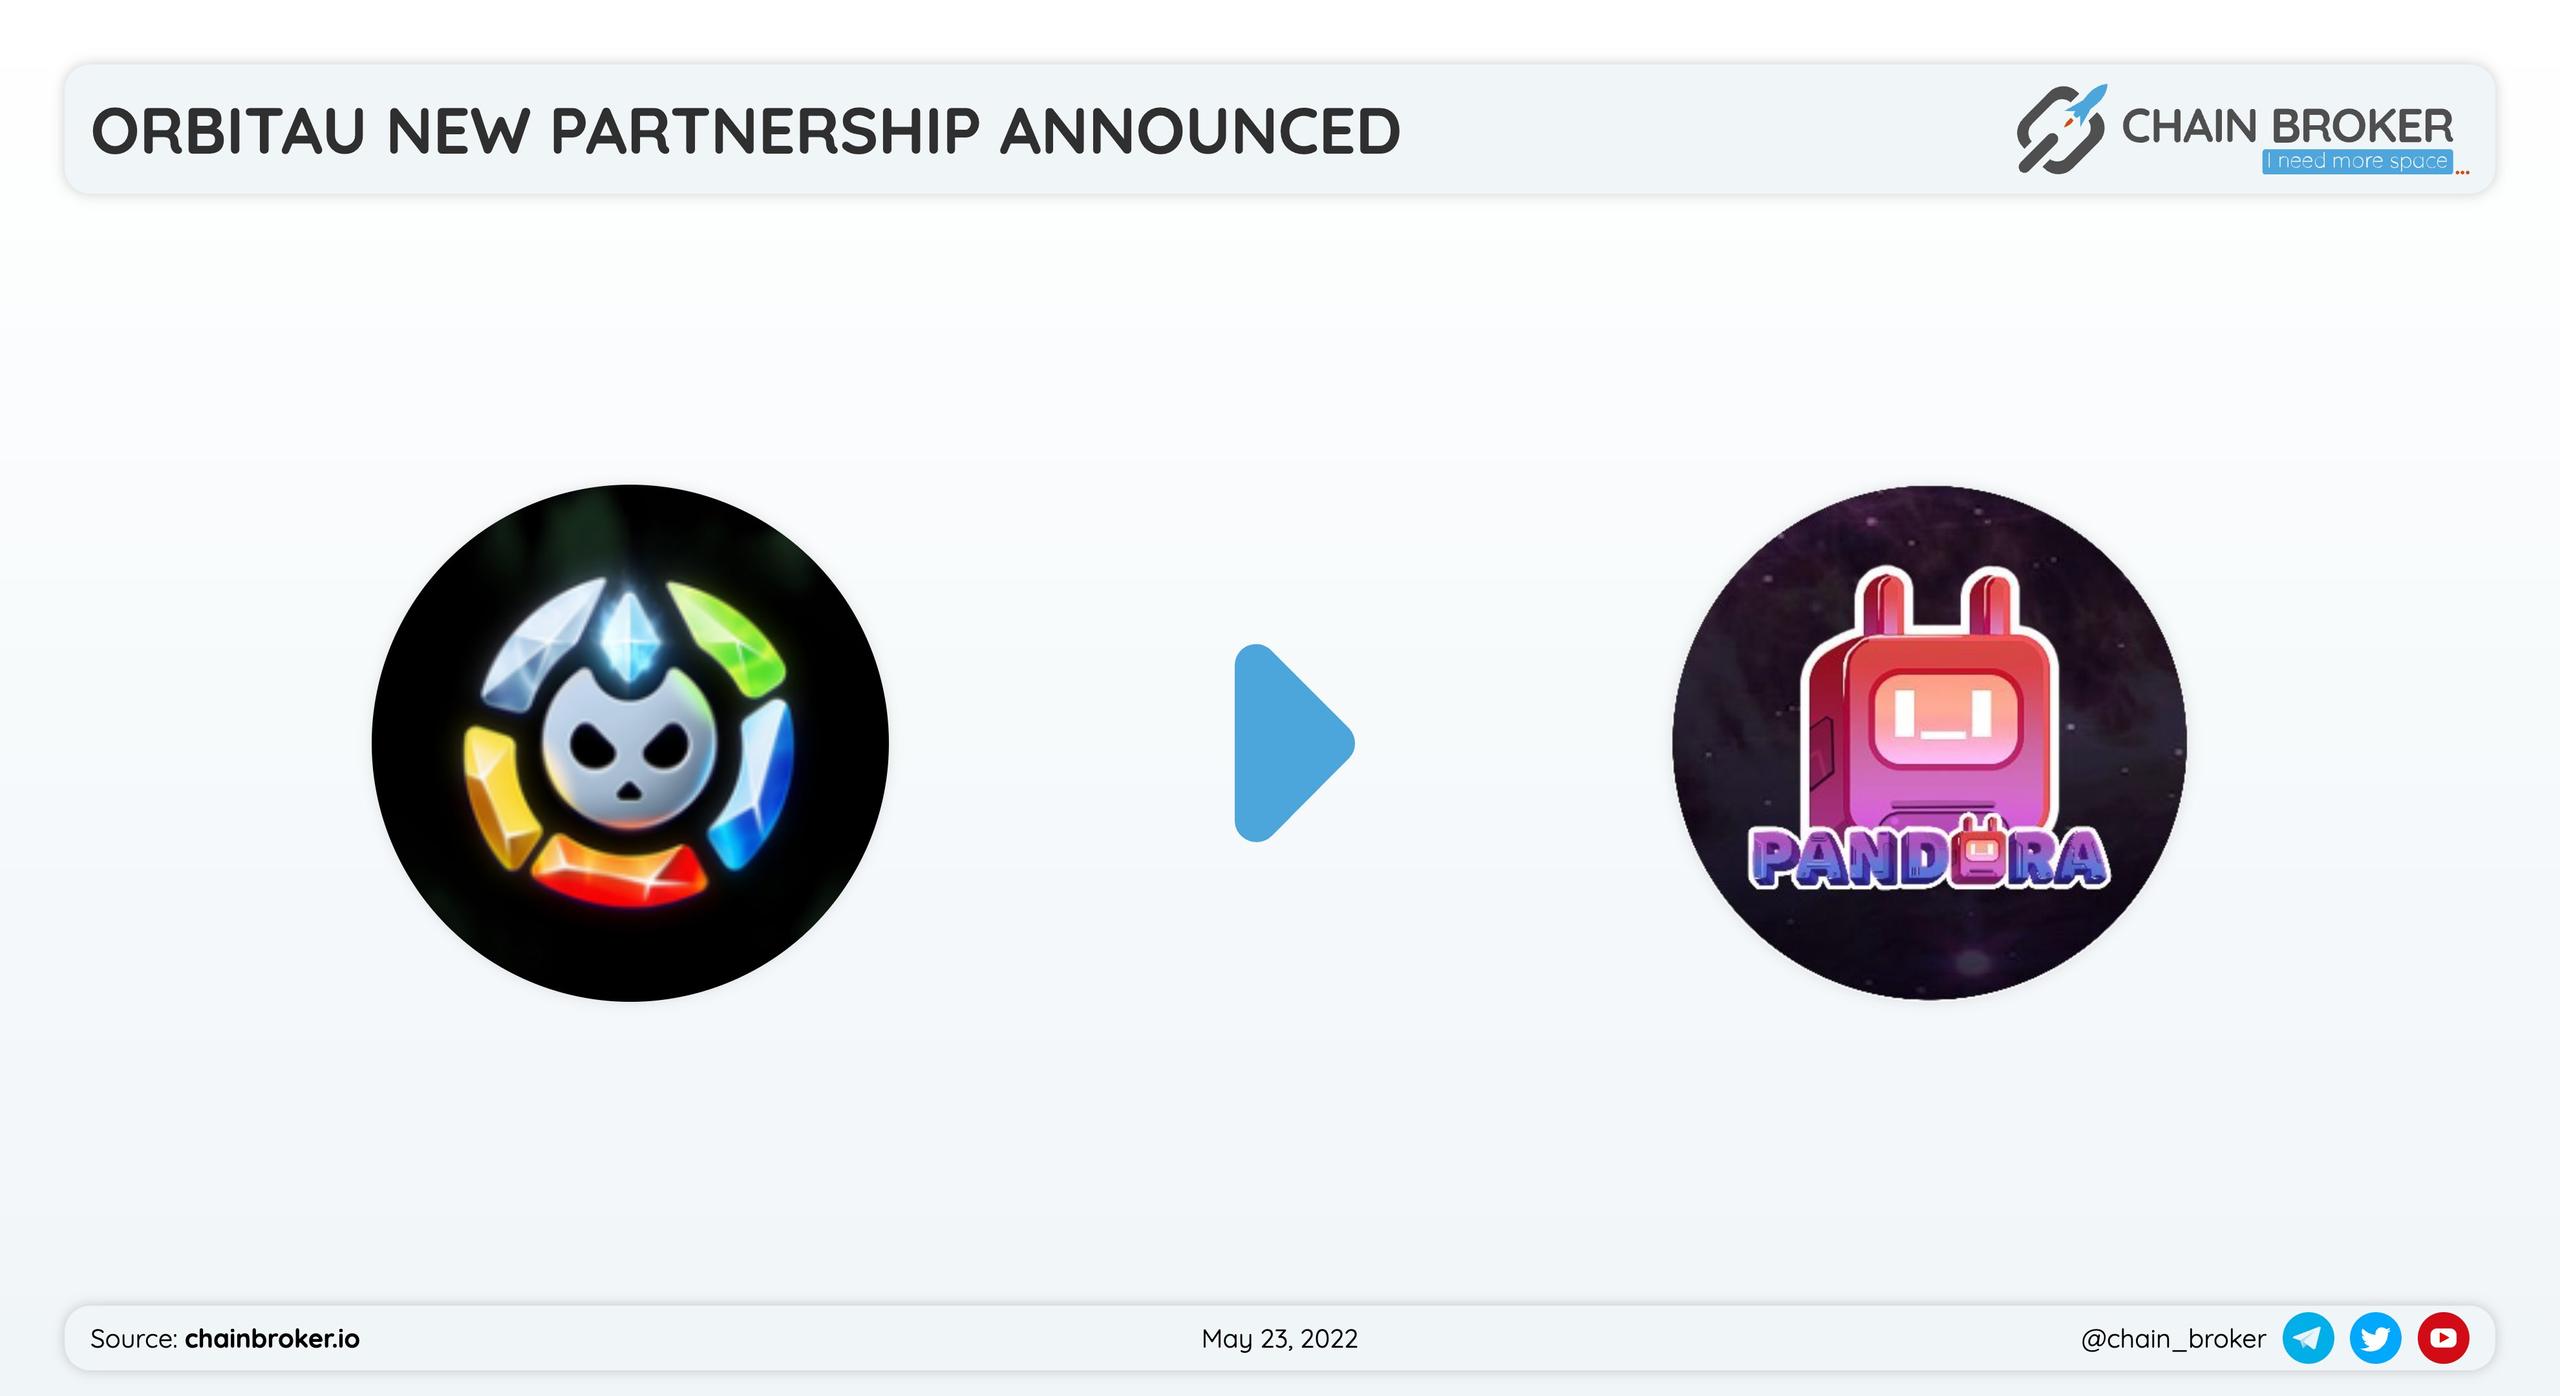 Orbitau has partnered with Pandora